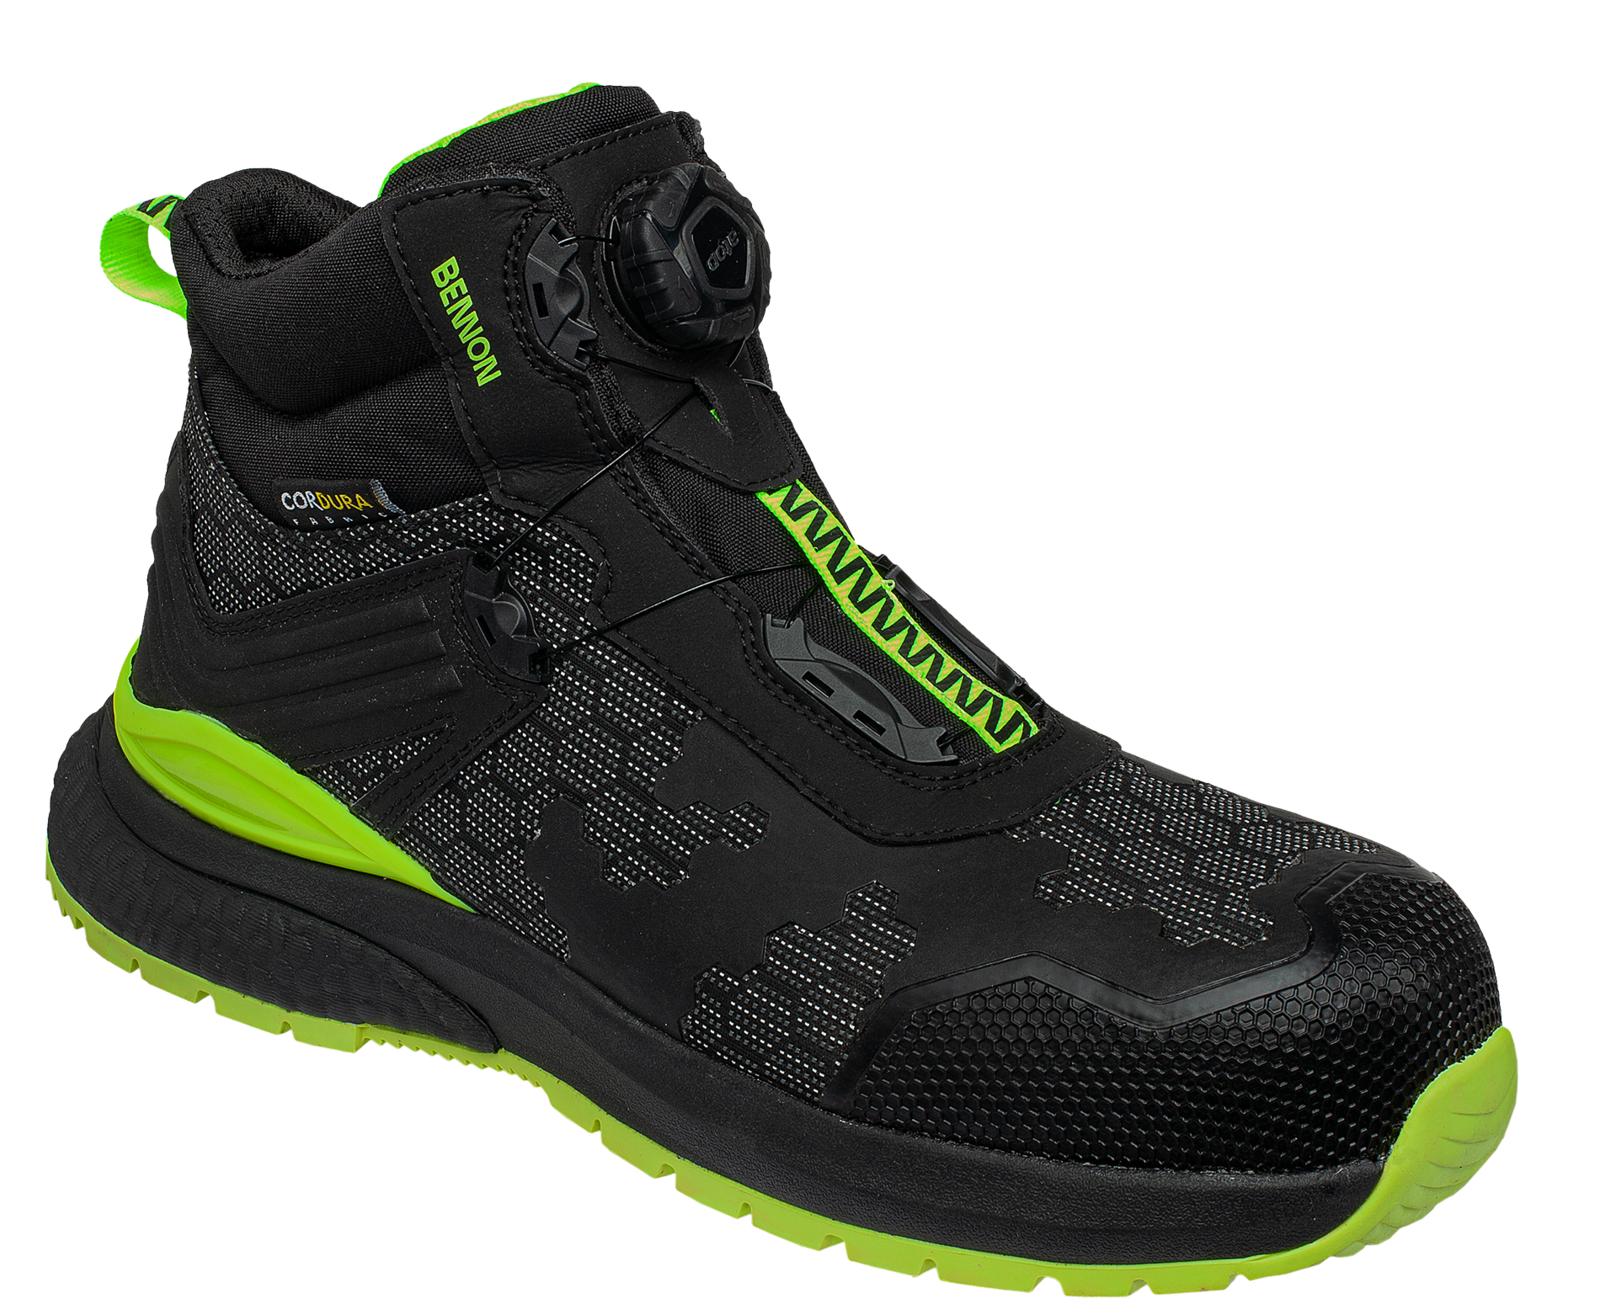 Bezpečnostná obuv Bennon Predator S3 ESD High - veľkosť: 41, farba: čierna/zelená